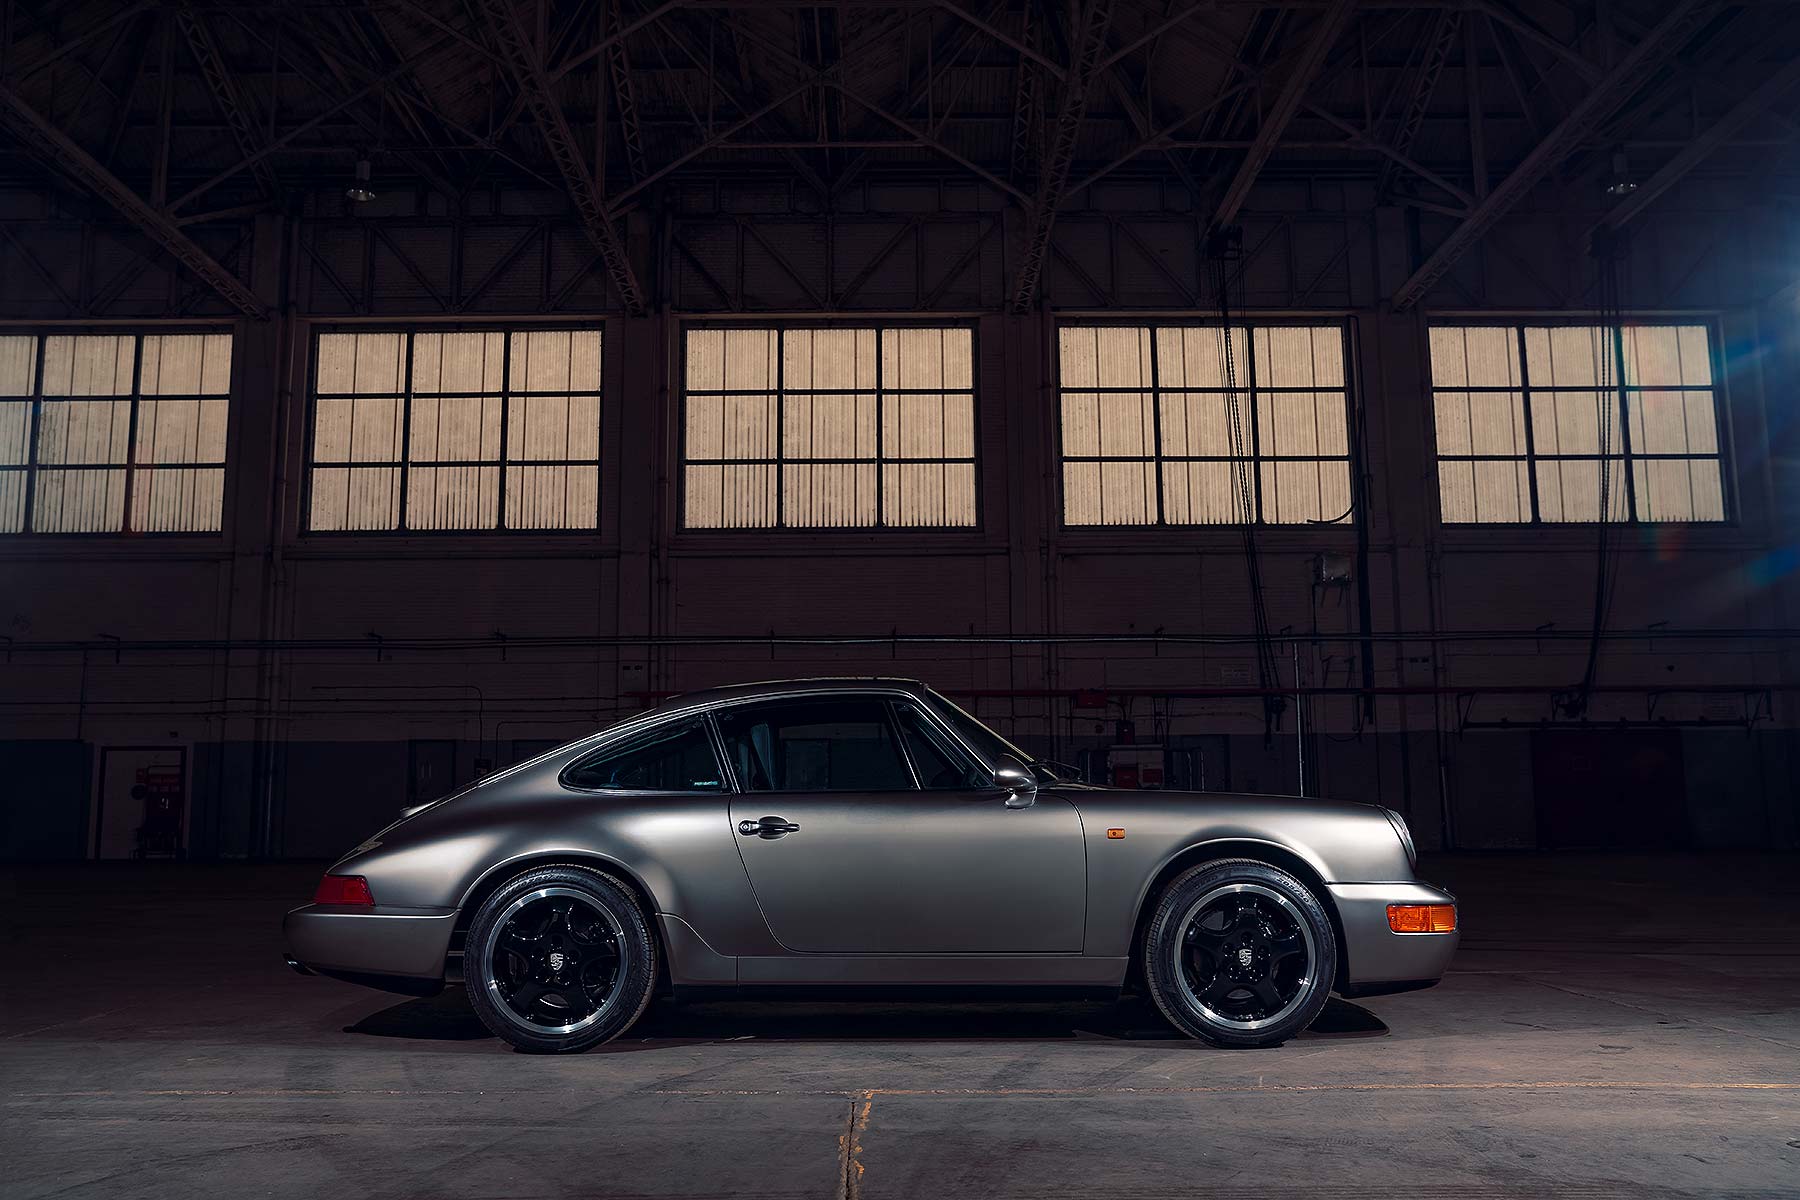 Porsche restorations at the NEC Classic